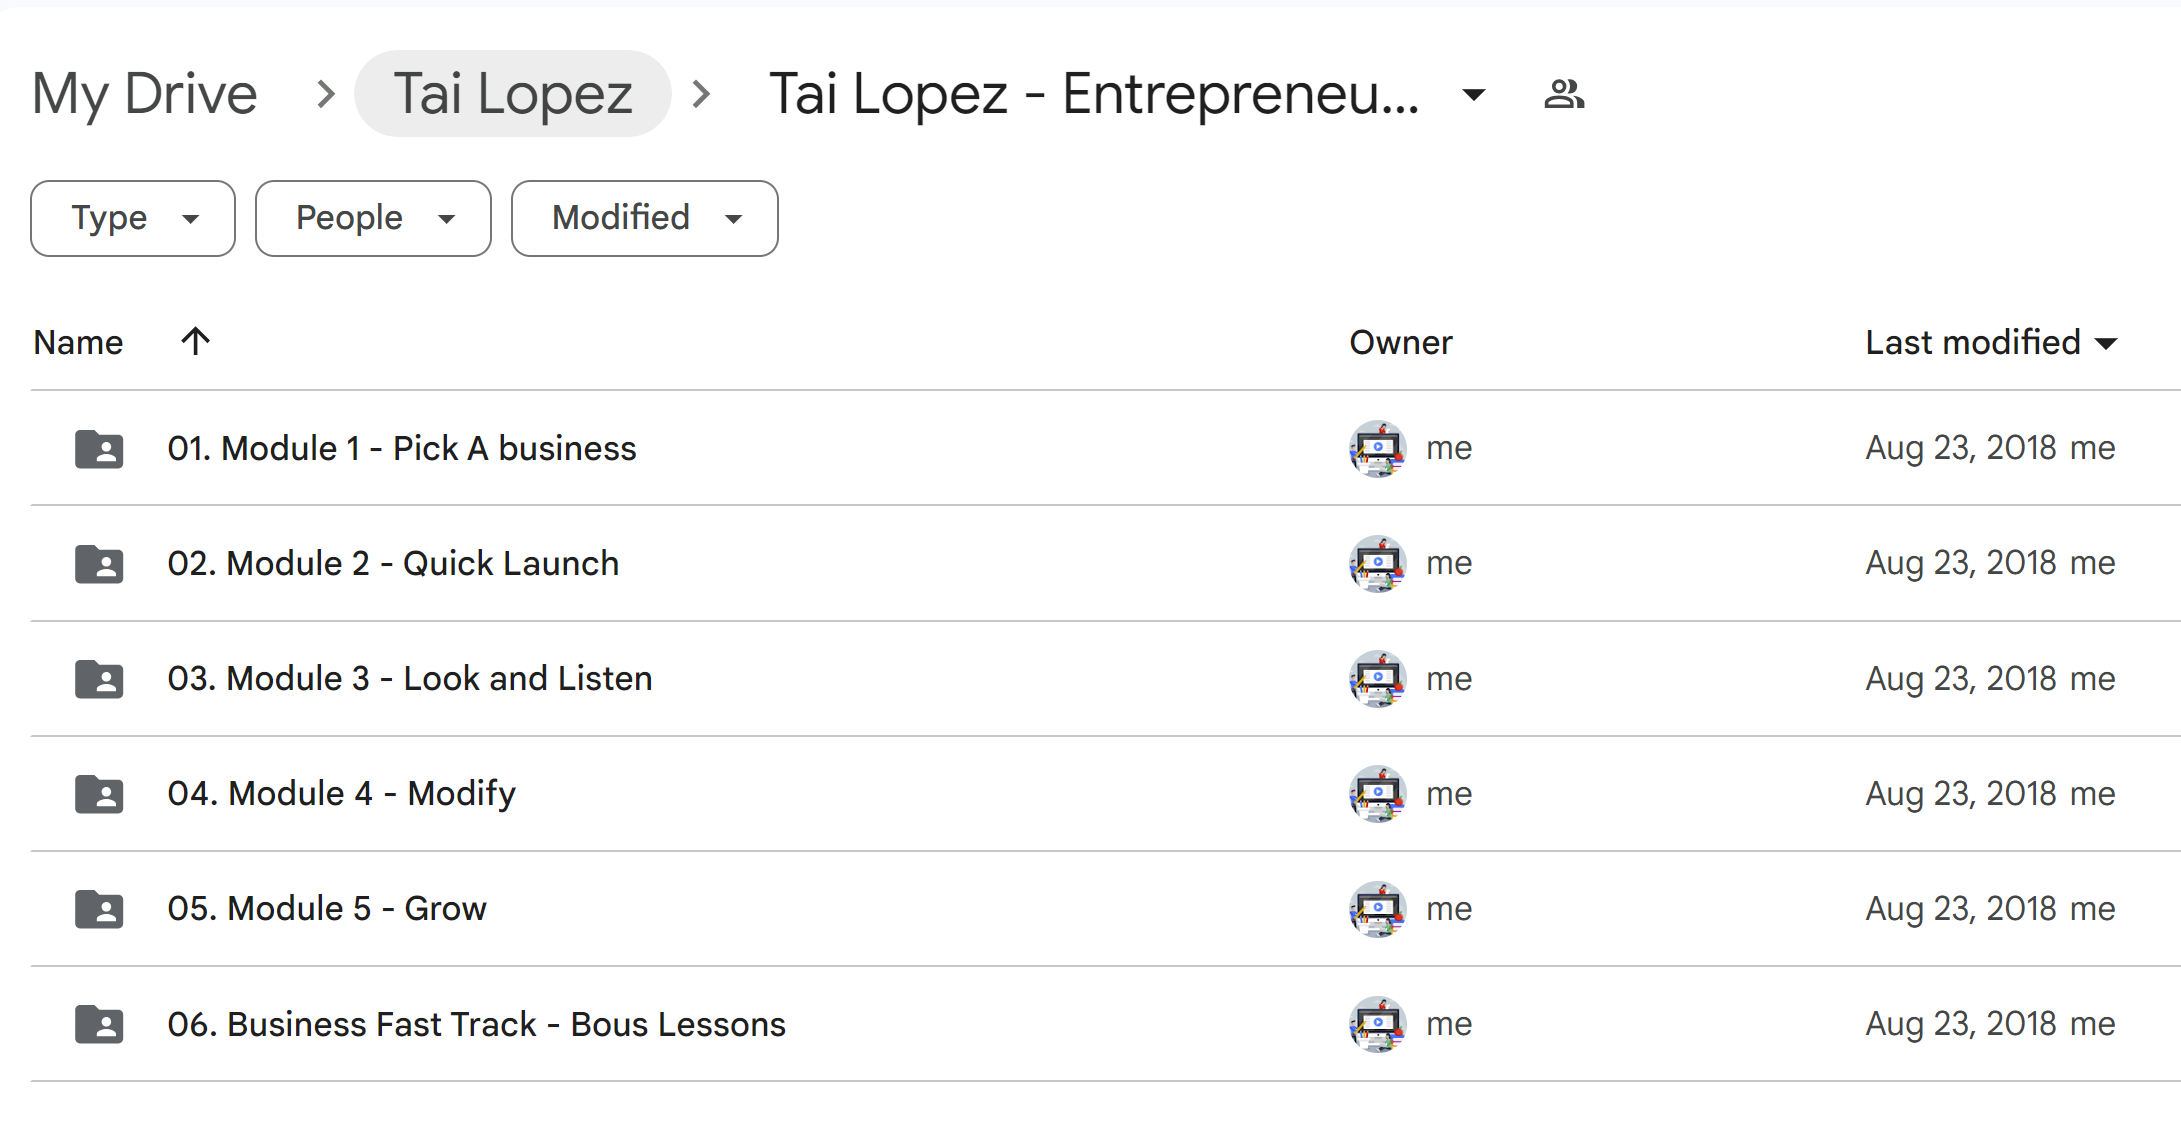 Tai Lopez Entrepreneur